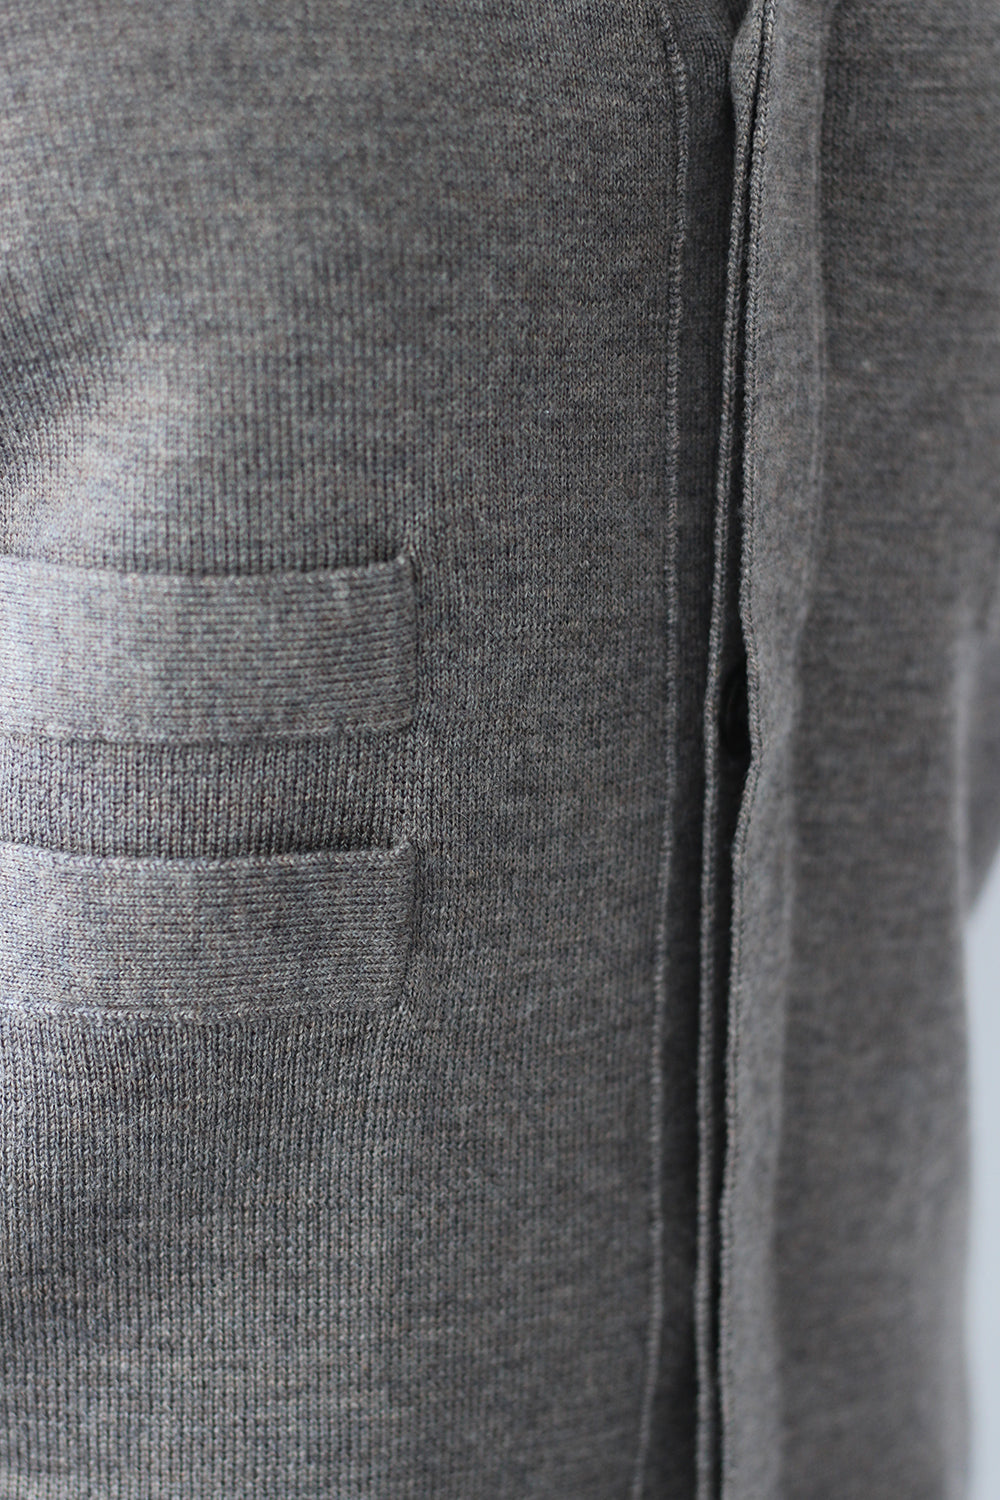 JUN MIKAMI "knit vest" (gray)